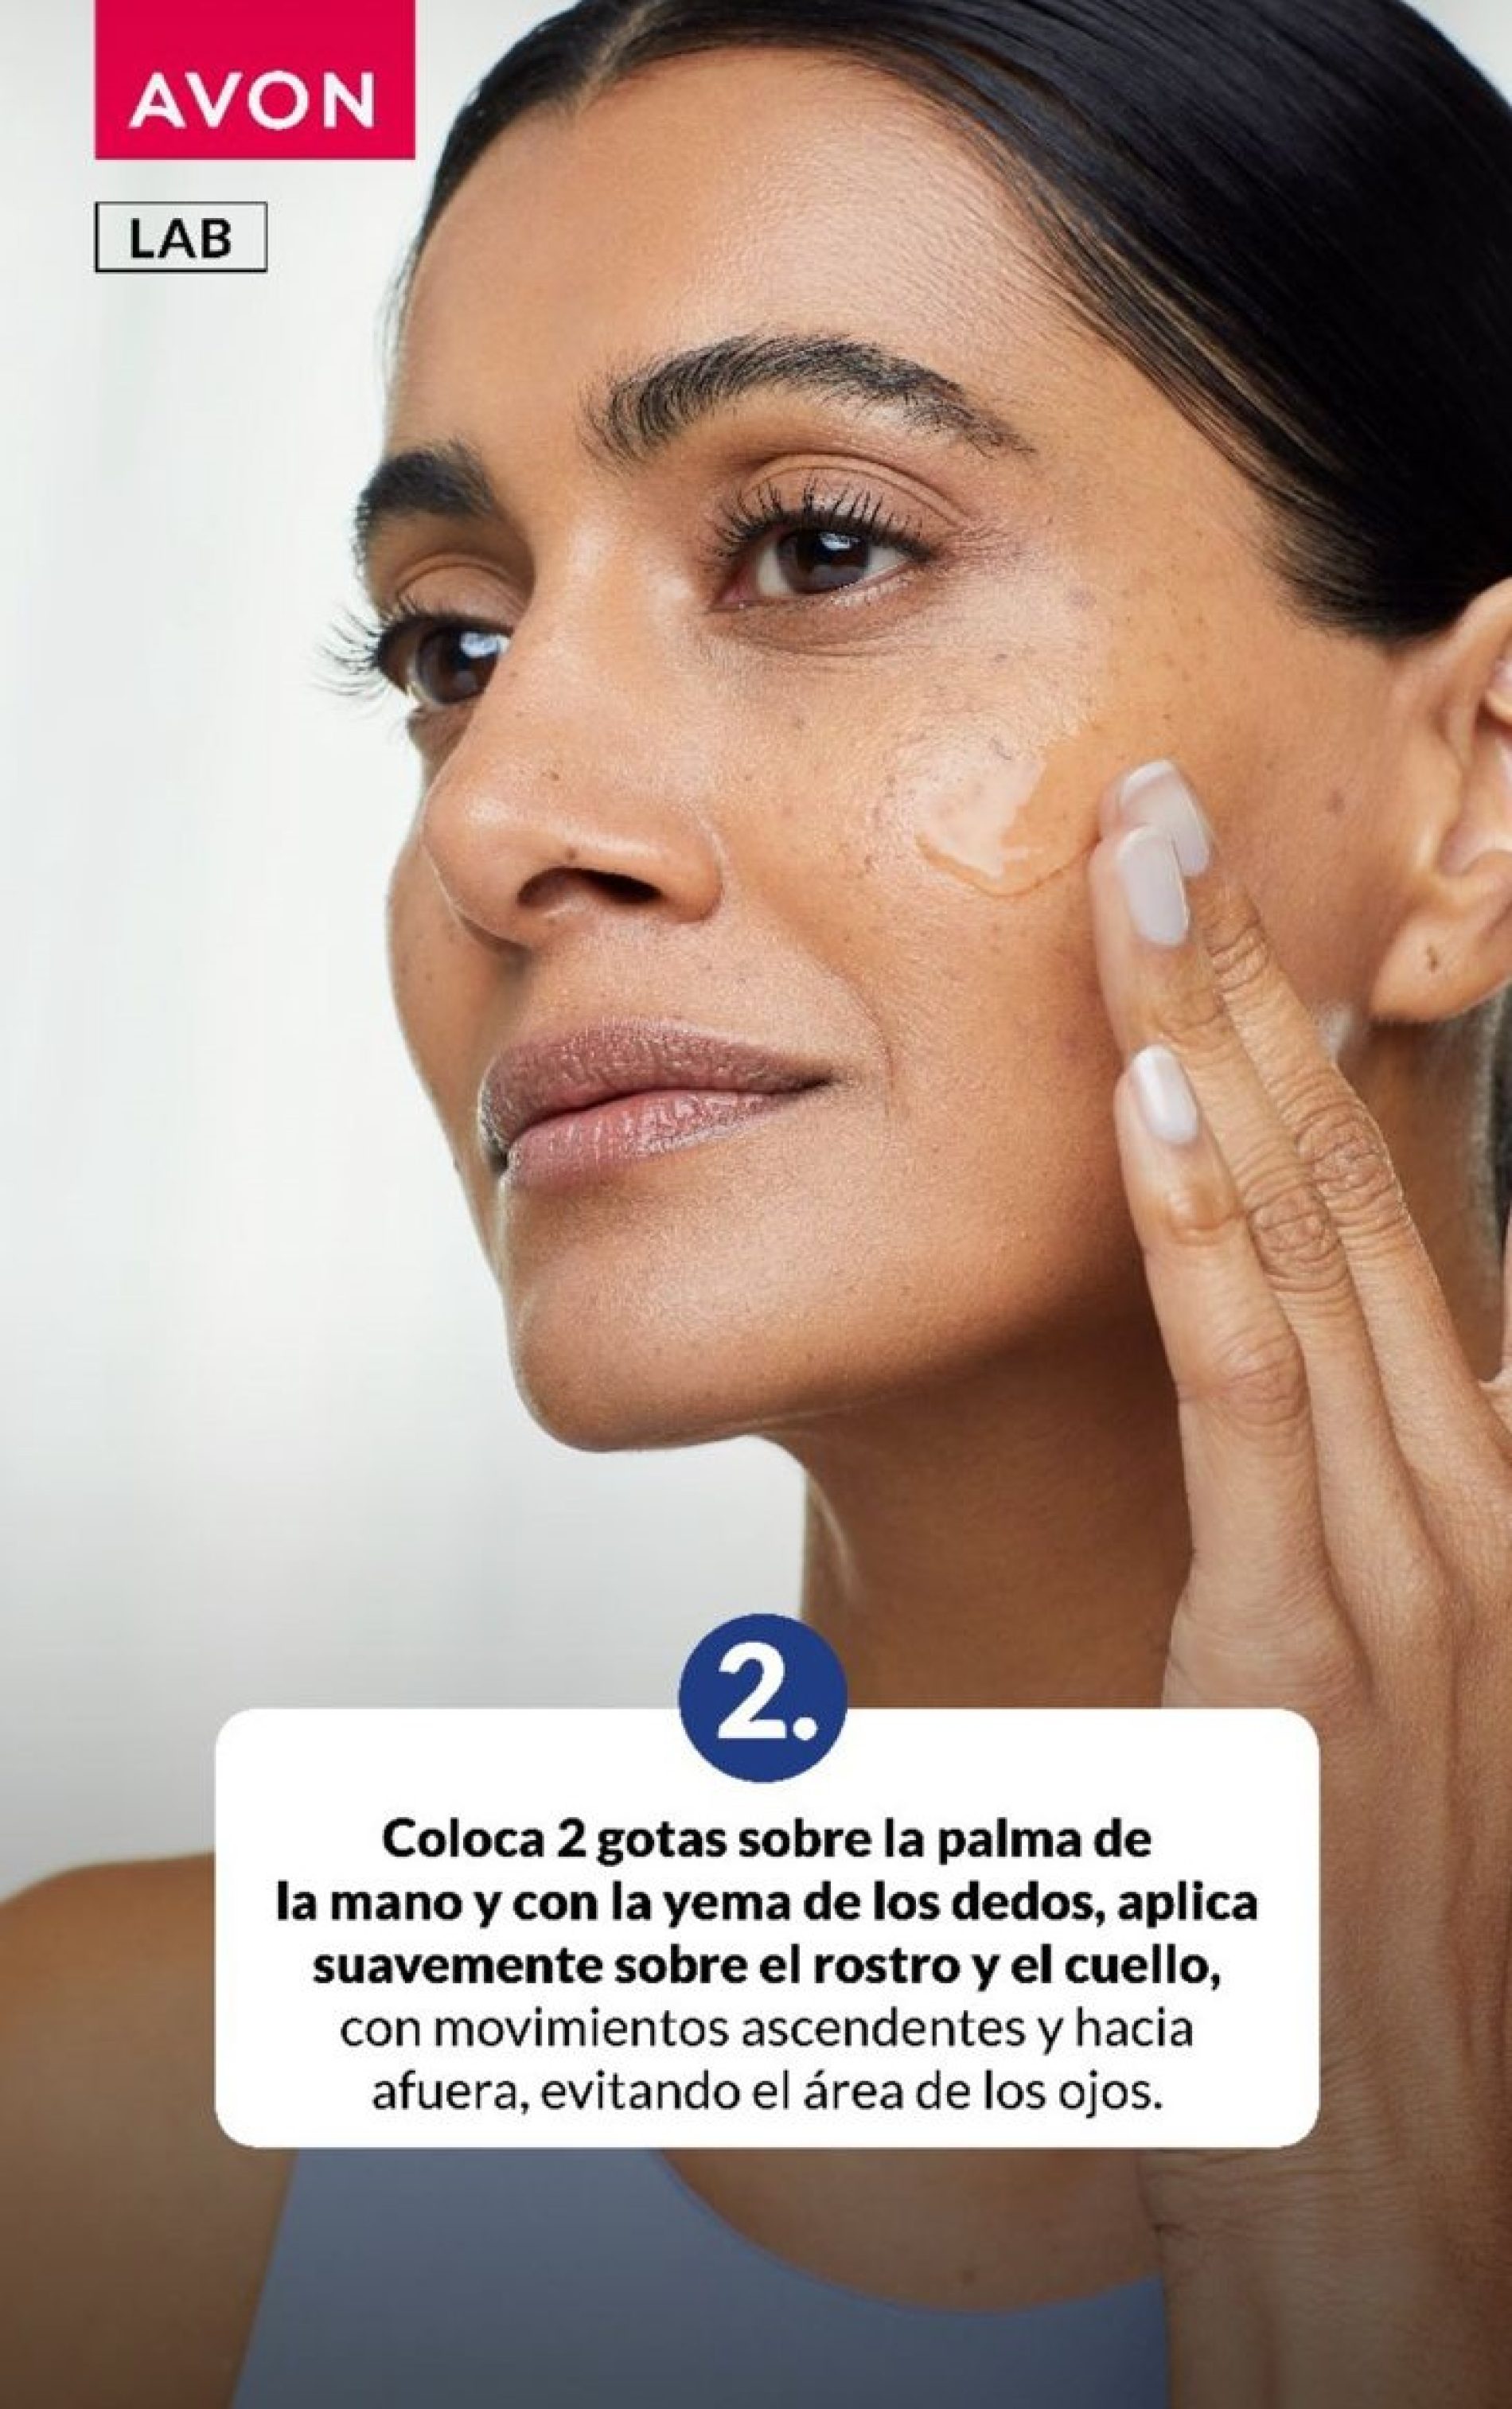 La importancia del cuidado de la piel para prevenir el envejecimiento prematuro y proteger contra los rayos solares